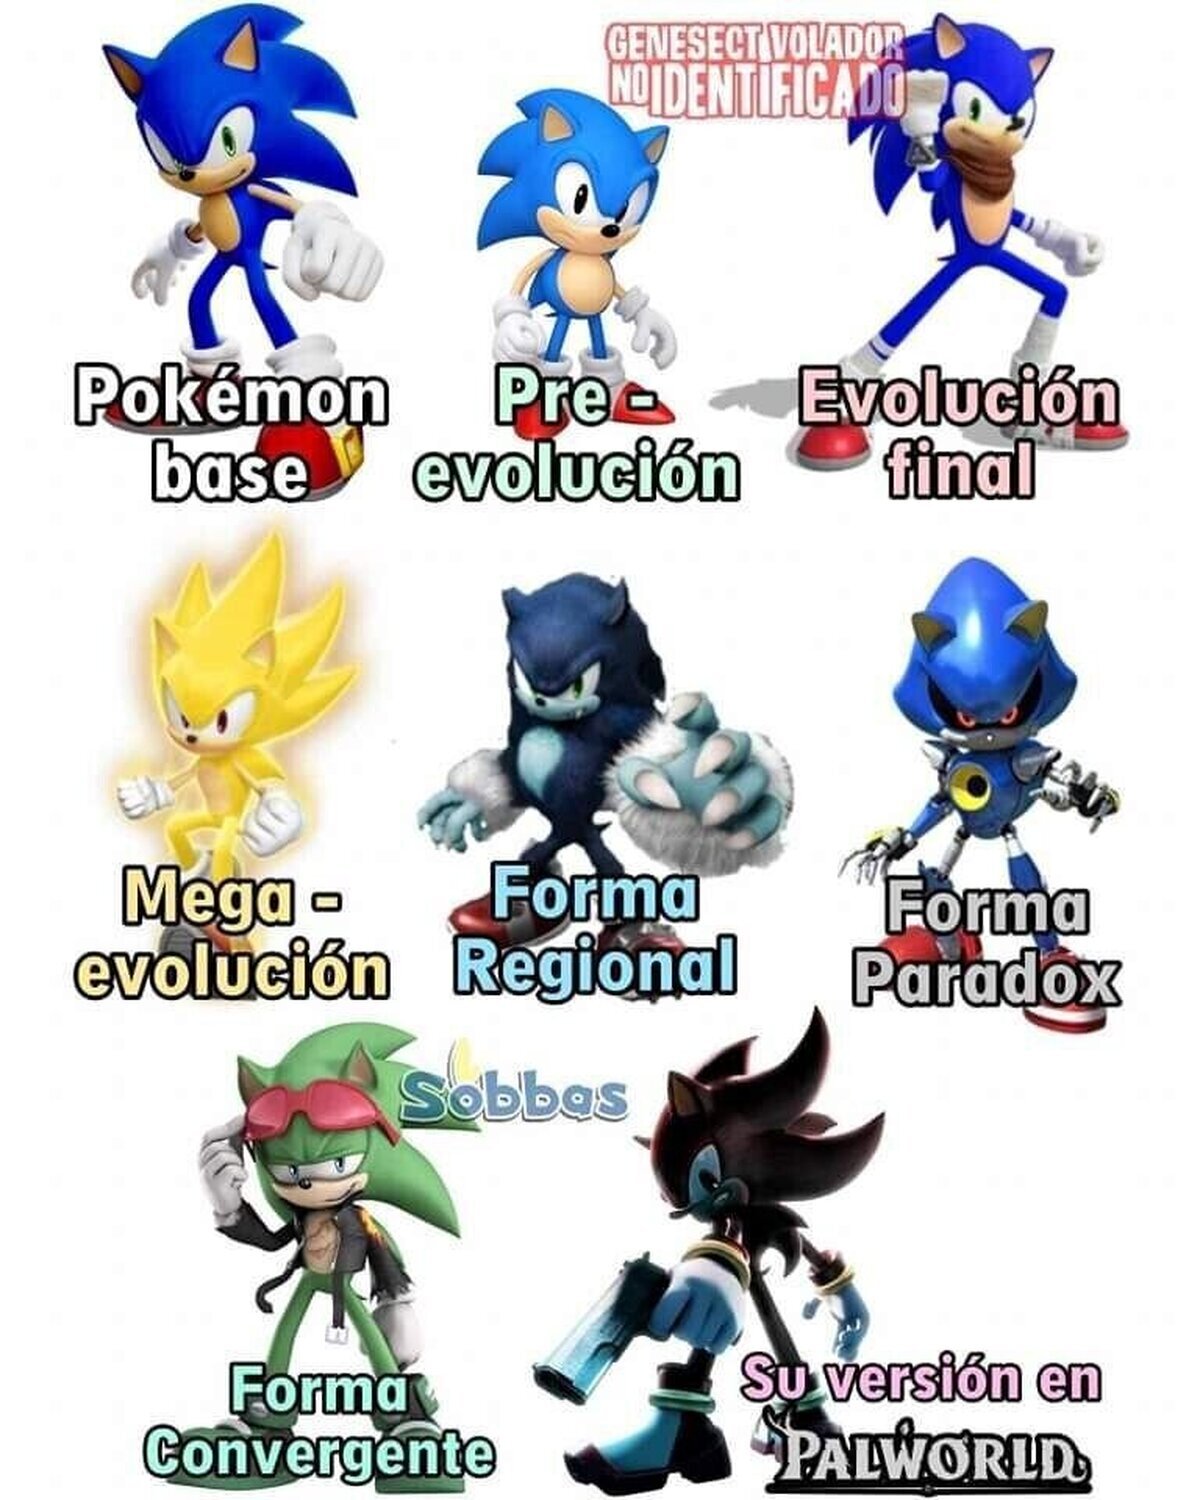 Pokemon explicado con Sonic, Por Sobbas